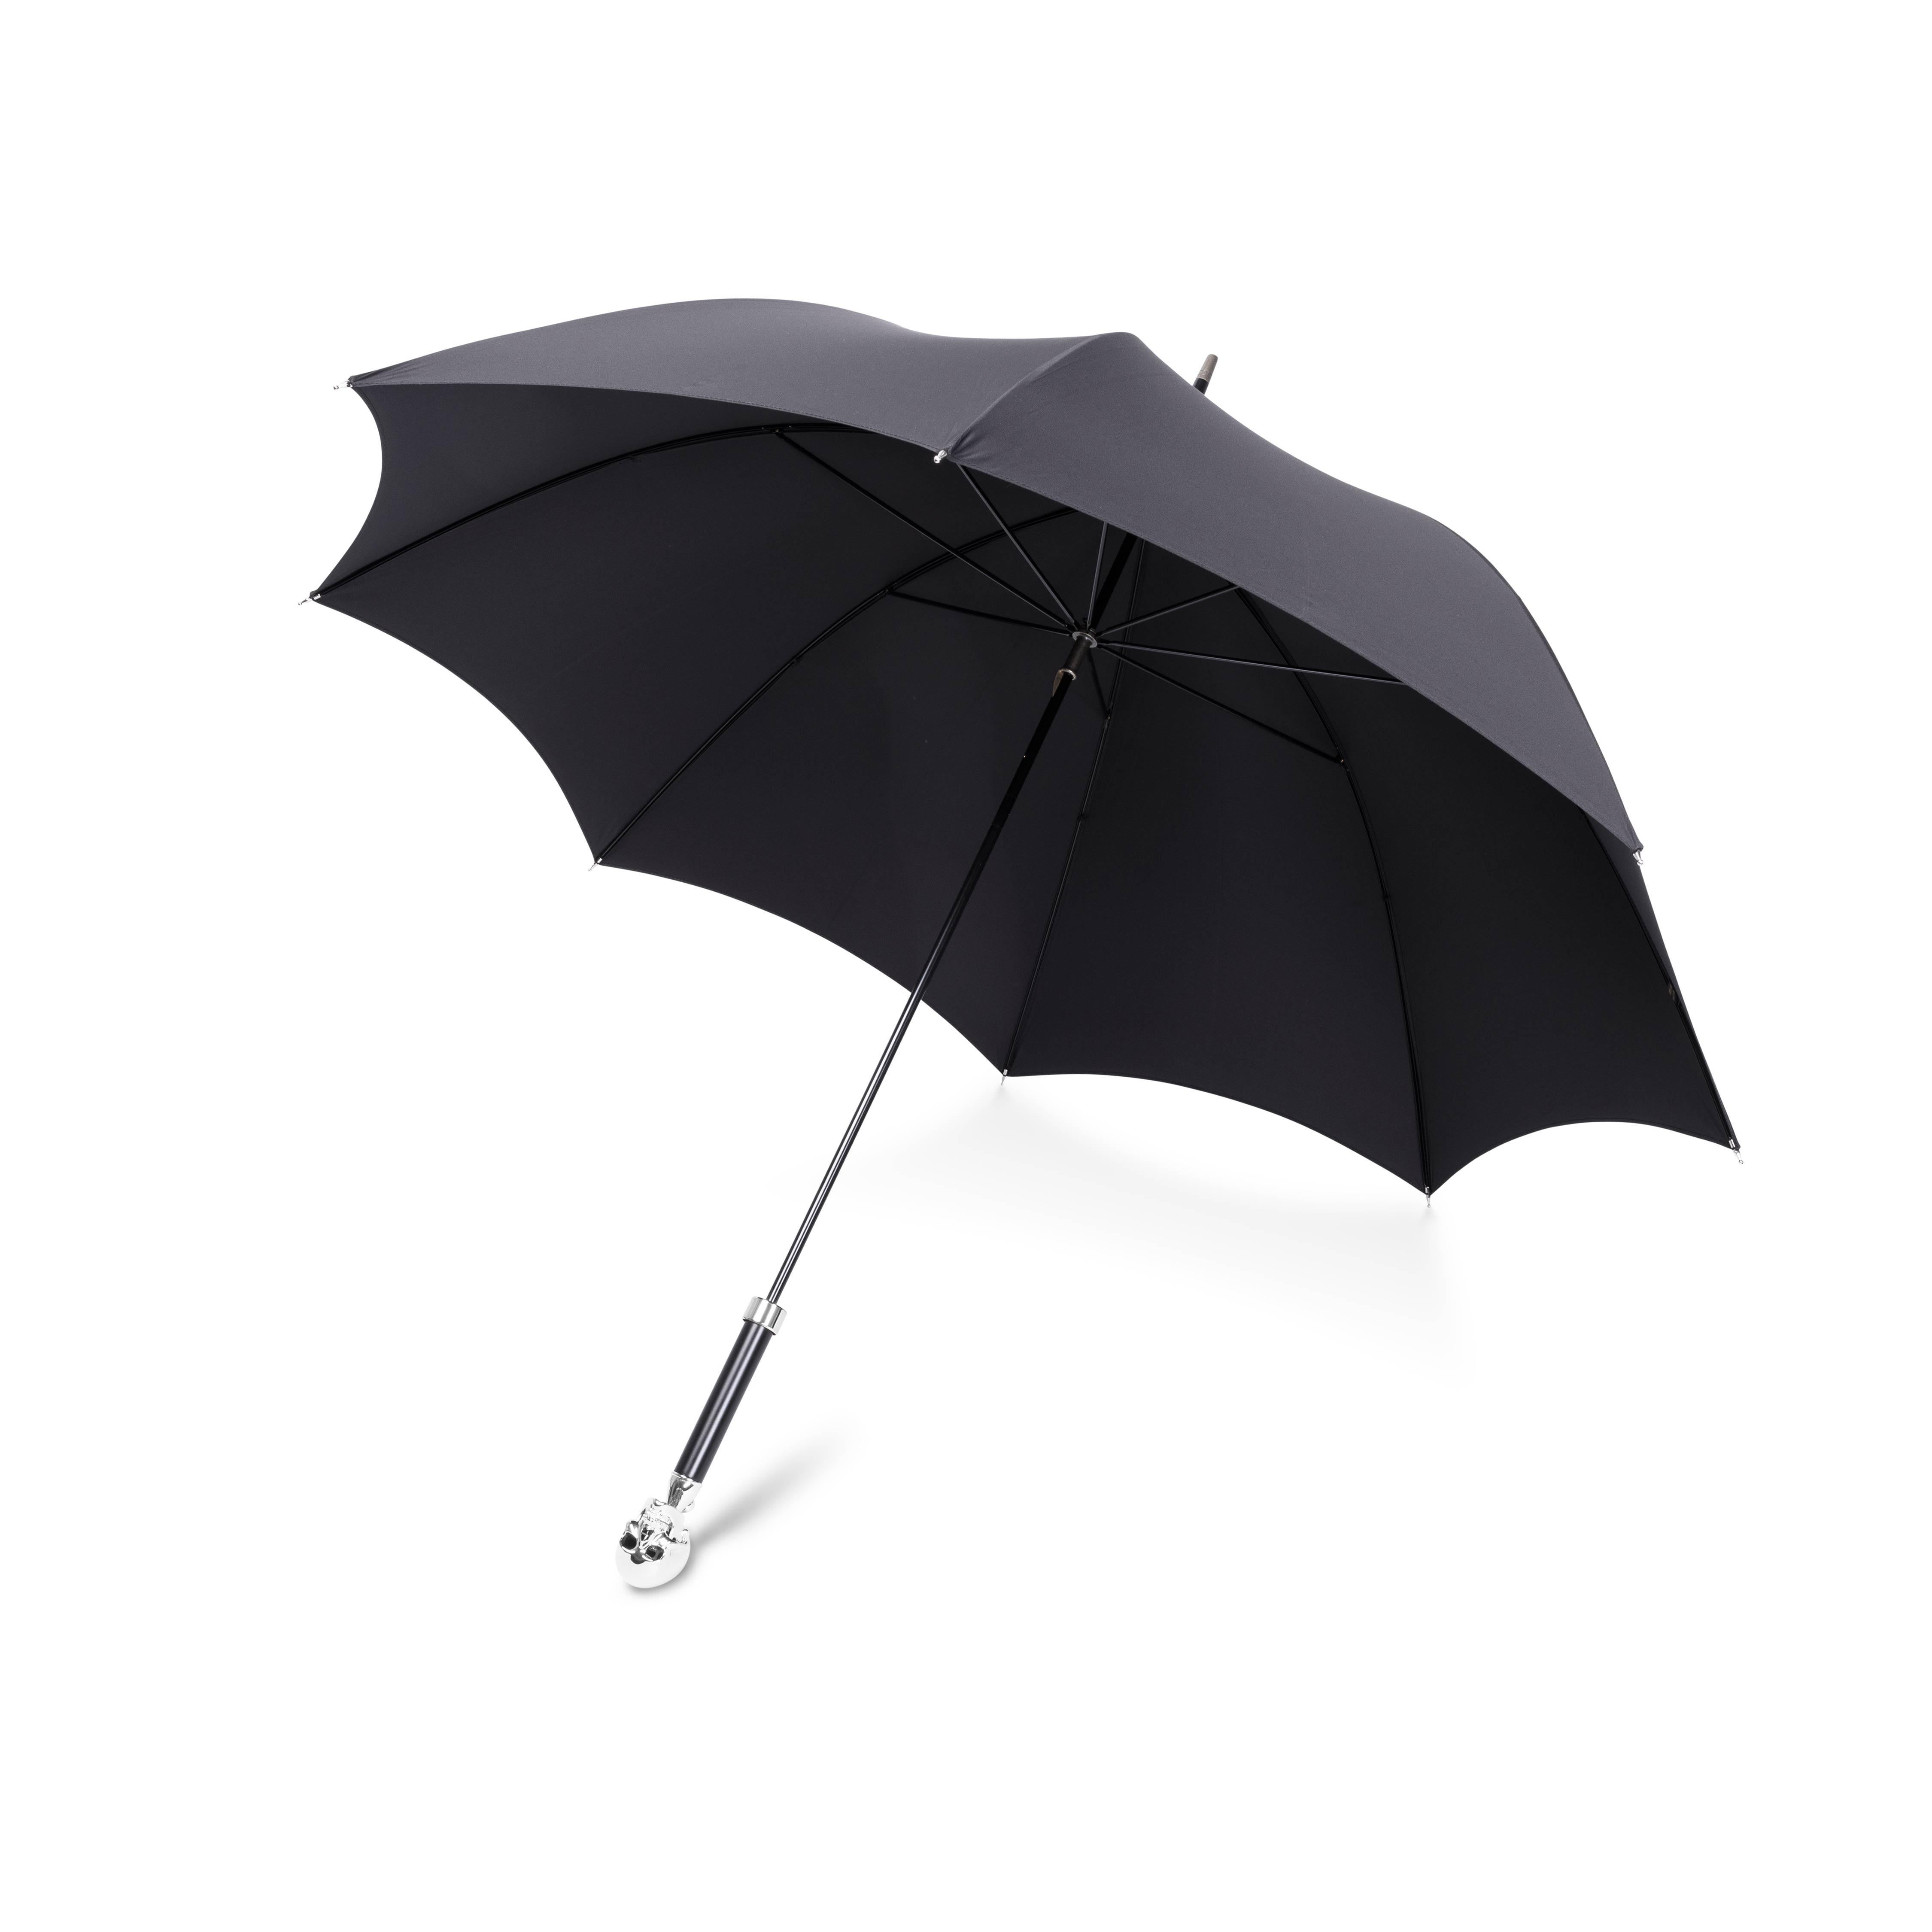 DEAKIN & FRANCIS, Piccadilly Arcade, Londres

Nos grands parapluies de luxe à tête de mort sont fabriqués à la main à l'aide de matériaux de la plus haute qualité et sont dotés d'une superbe tête de mort plaquée en nickel blanc. Poussez le levier